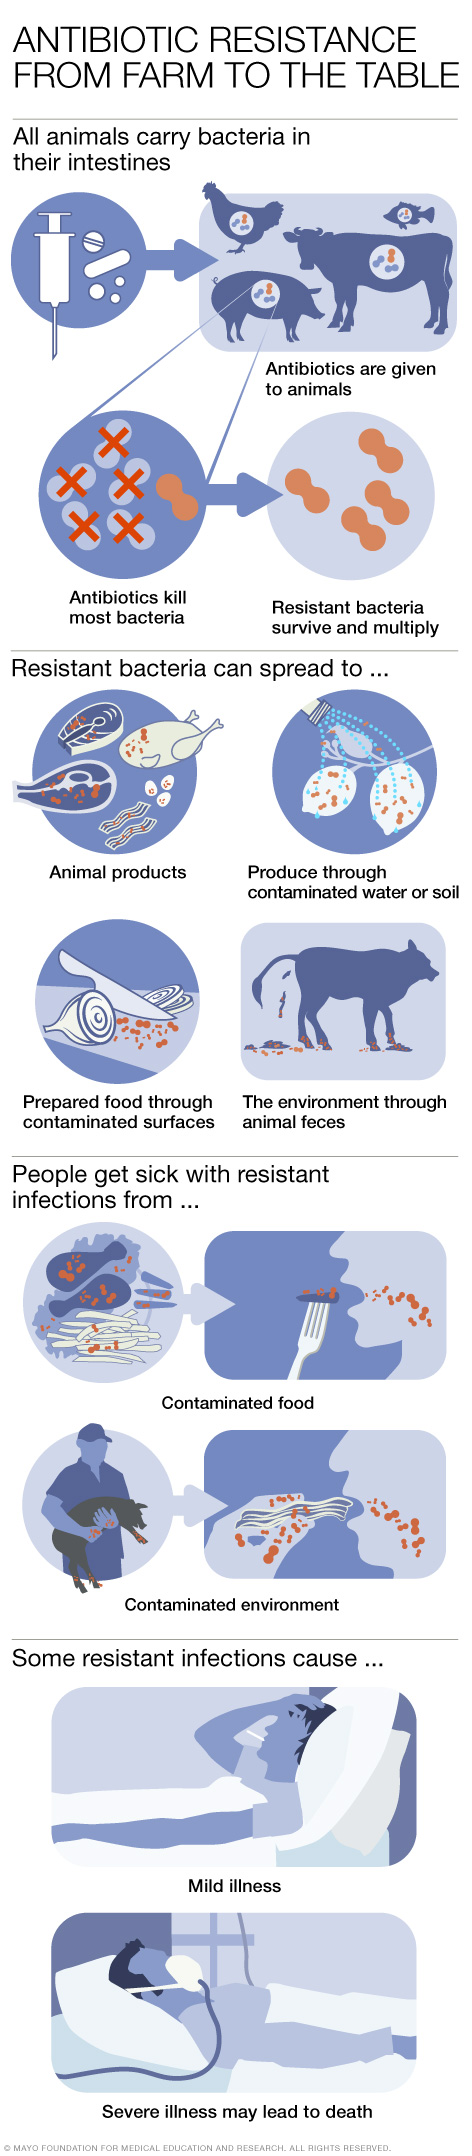 استخدام المضاد الحيوي في الحيوانات المنتجة للغذاء